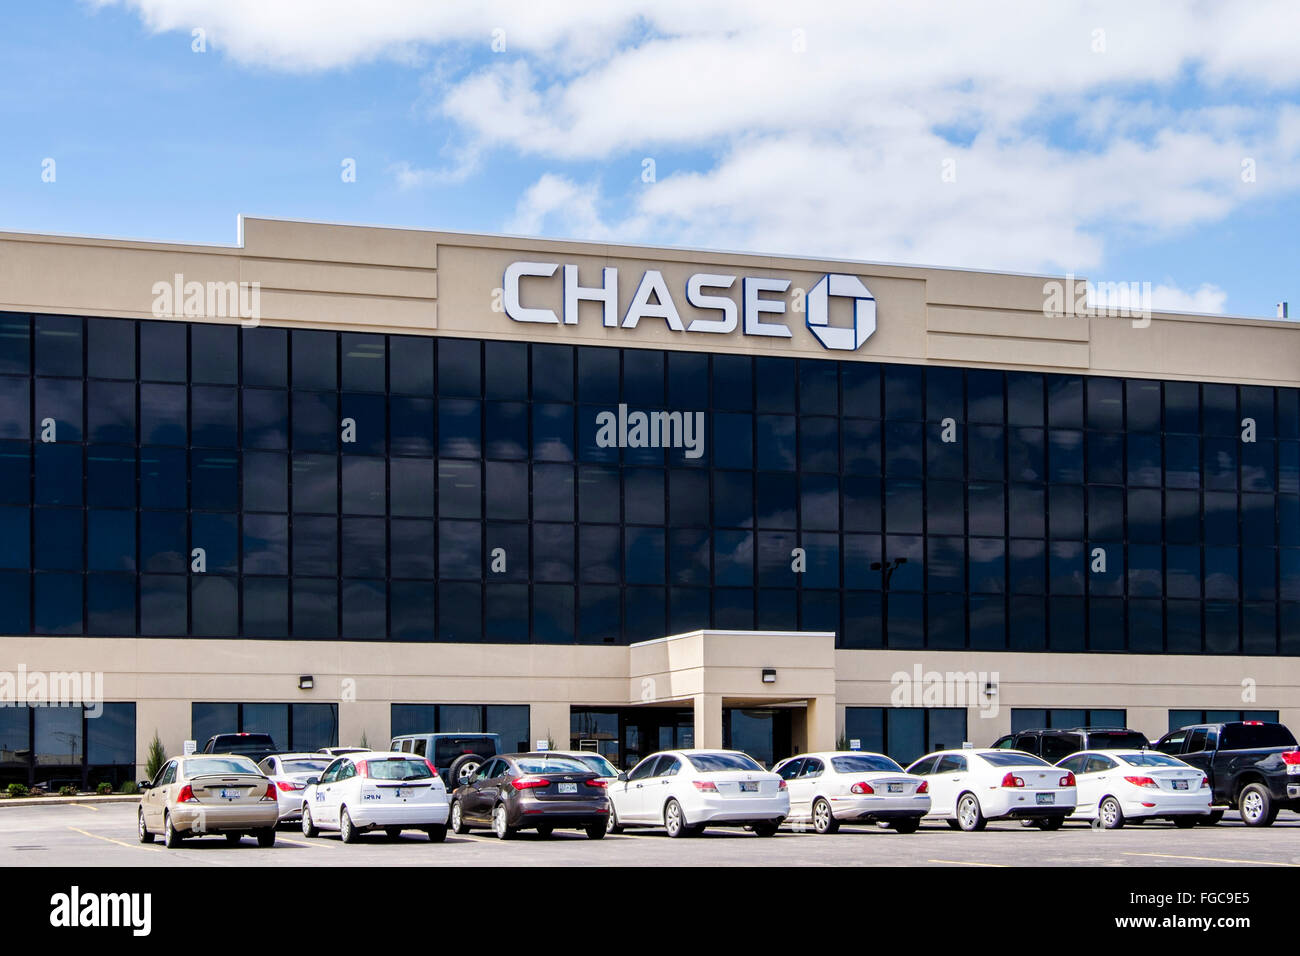 Chase Bank exterior,located in Oklahoma City, Oklahoma, USA. Stock Photo